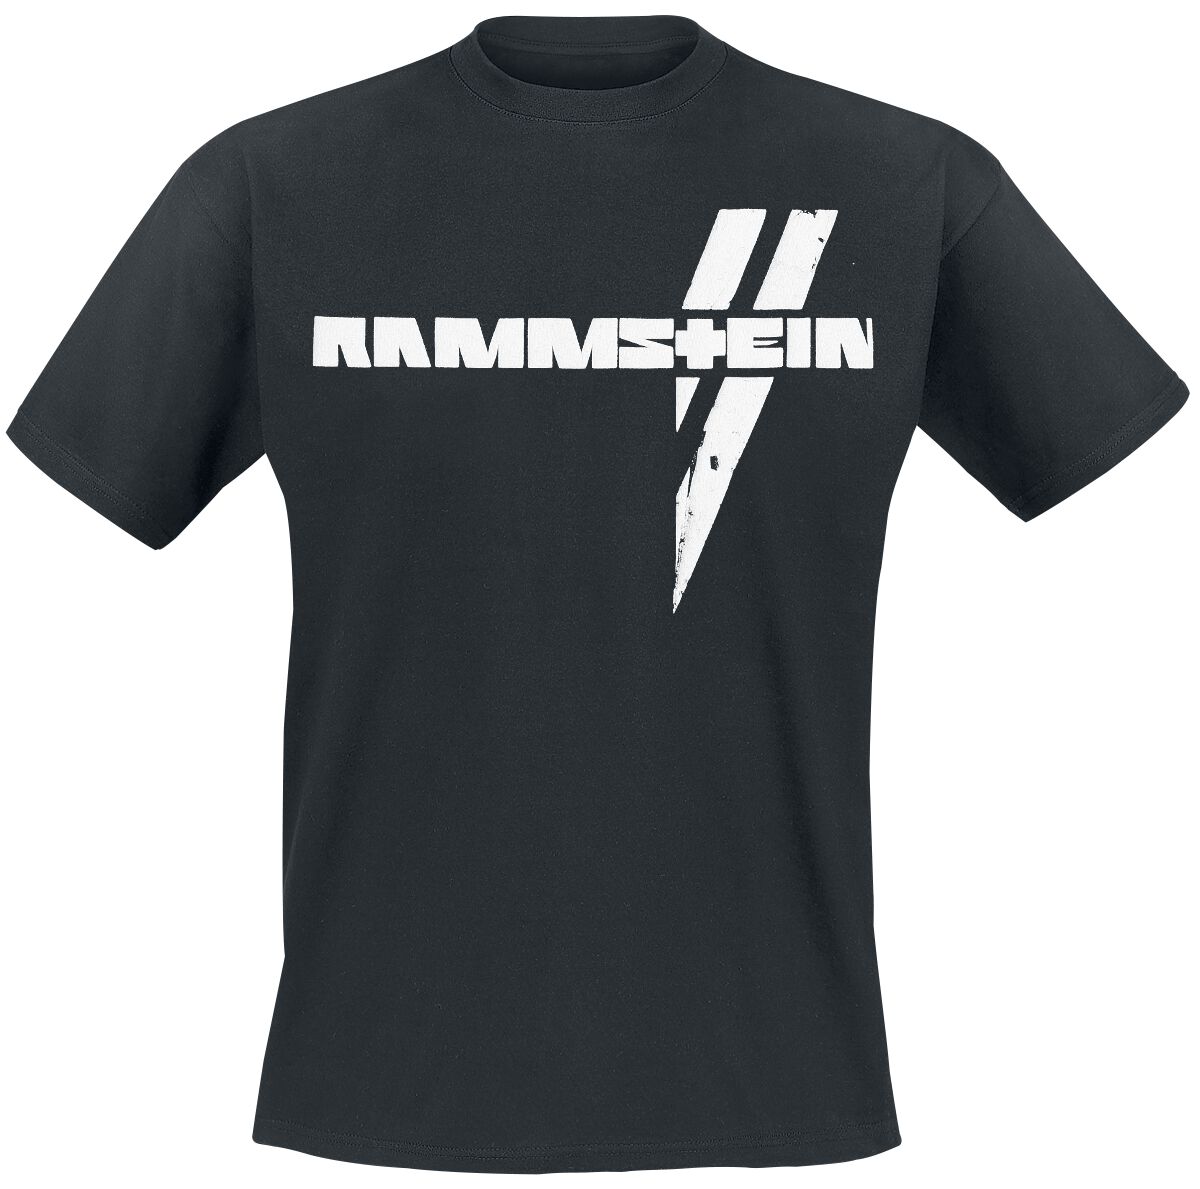 Rammstein T-Shirt - Weiße Balken - S bis 5XL - für Männer - Größe XXL - schwarz  - Lizenziertes Merchandise!